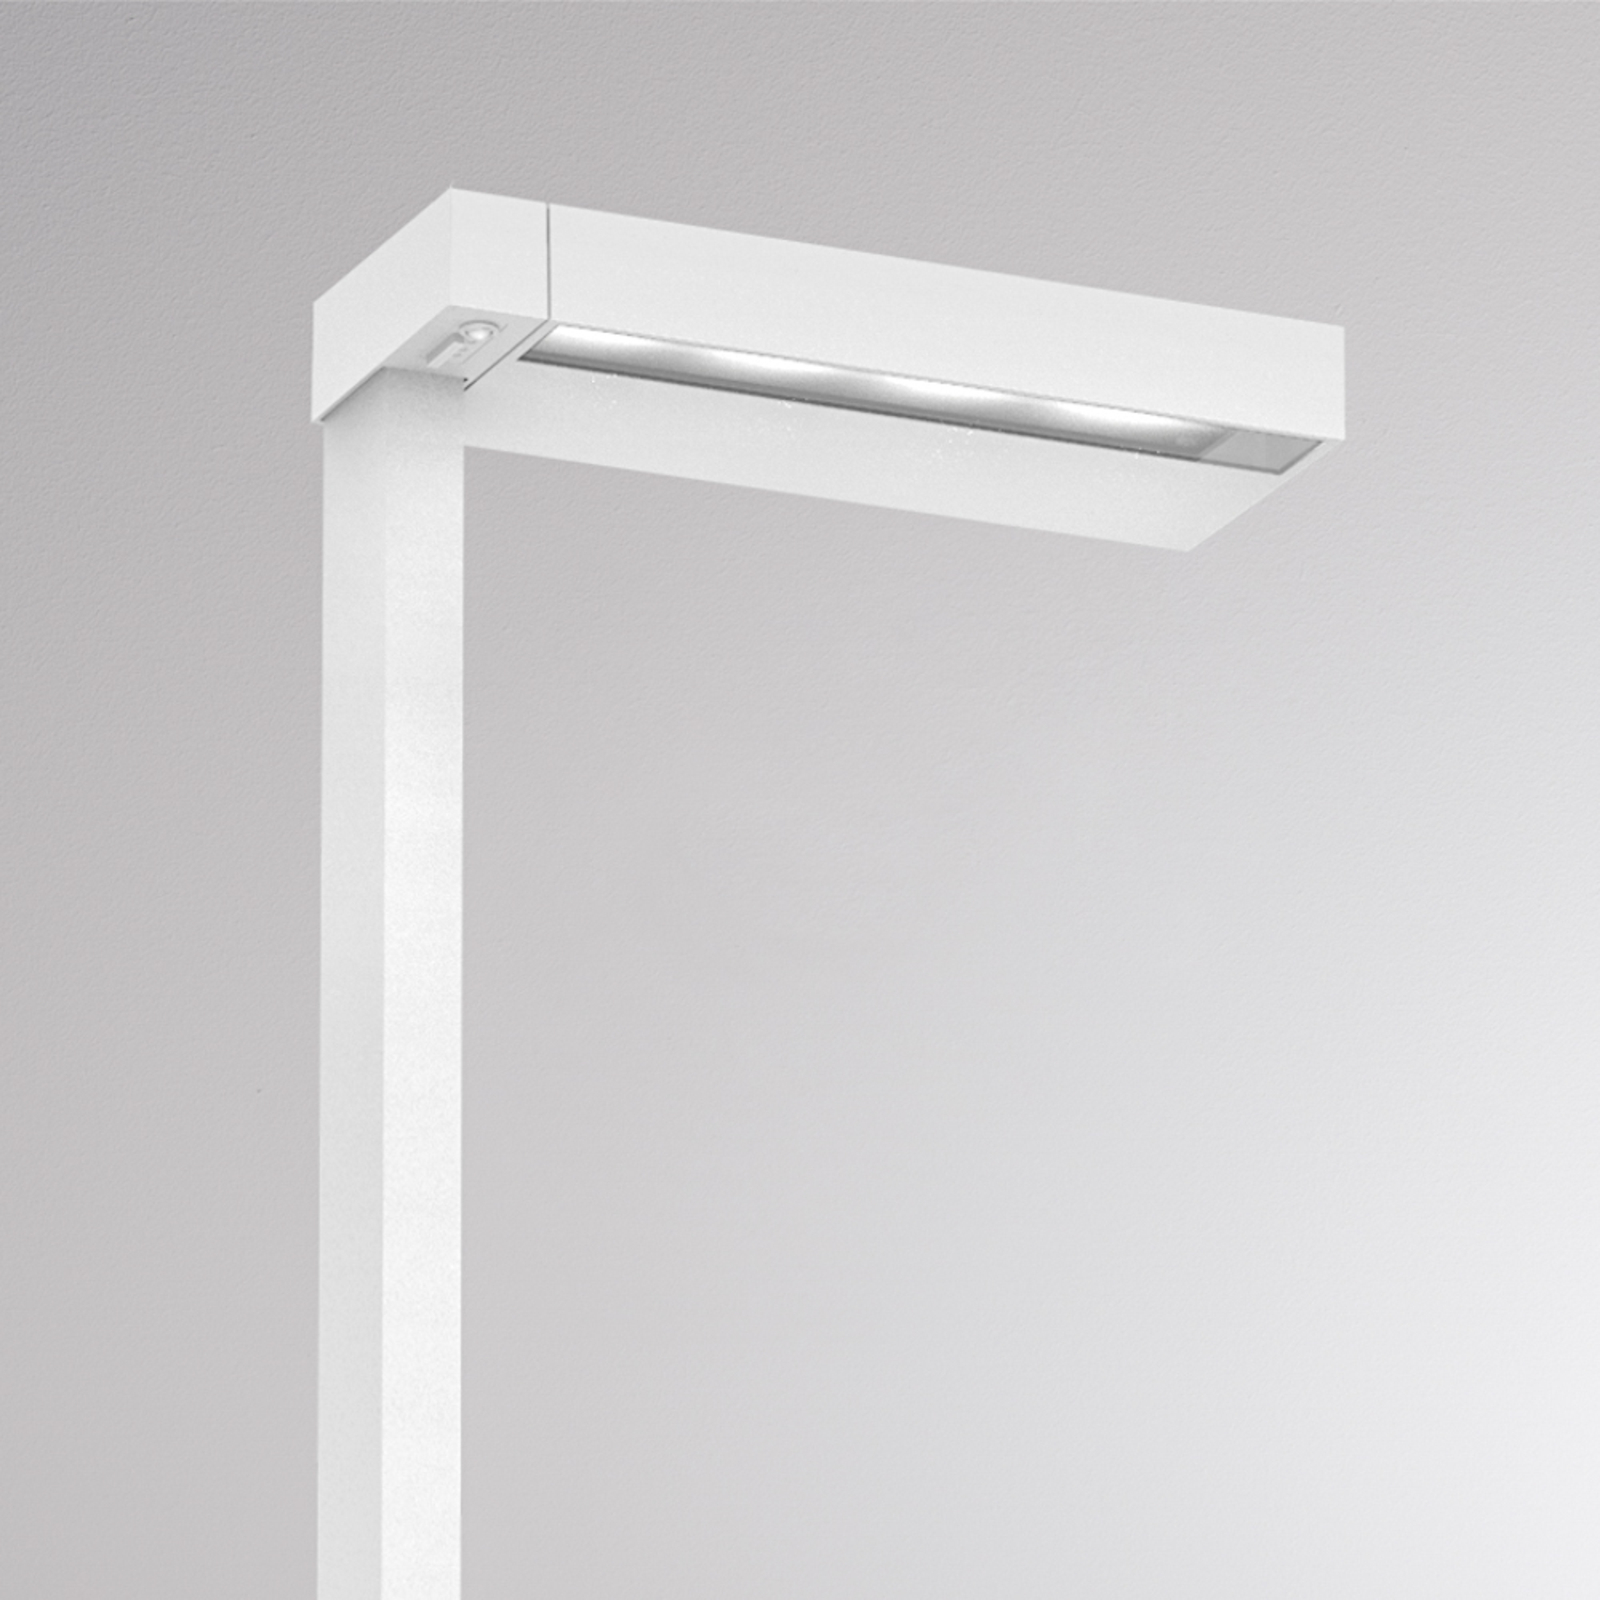 Molto Luce Concept Right F floor lamp sensor white